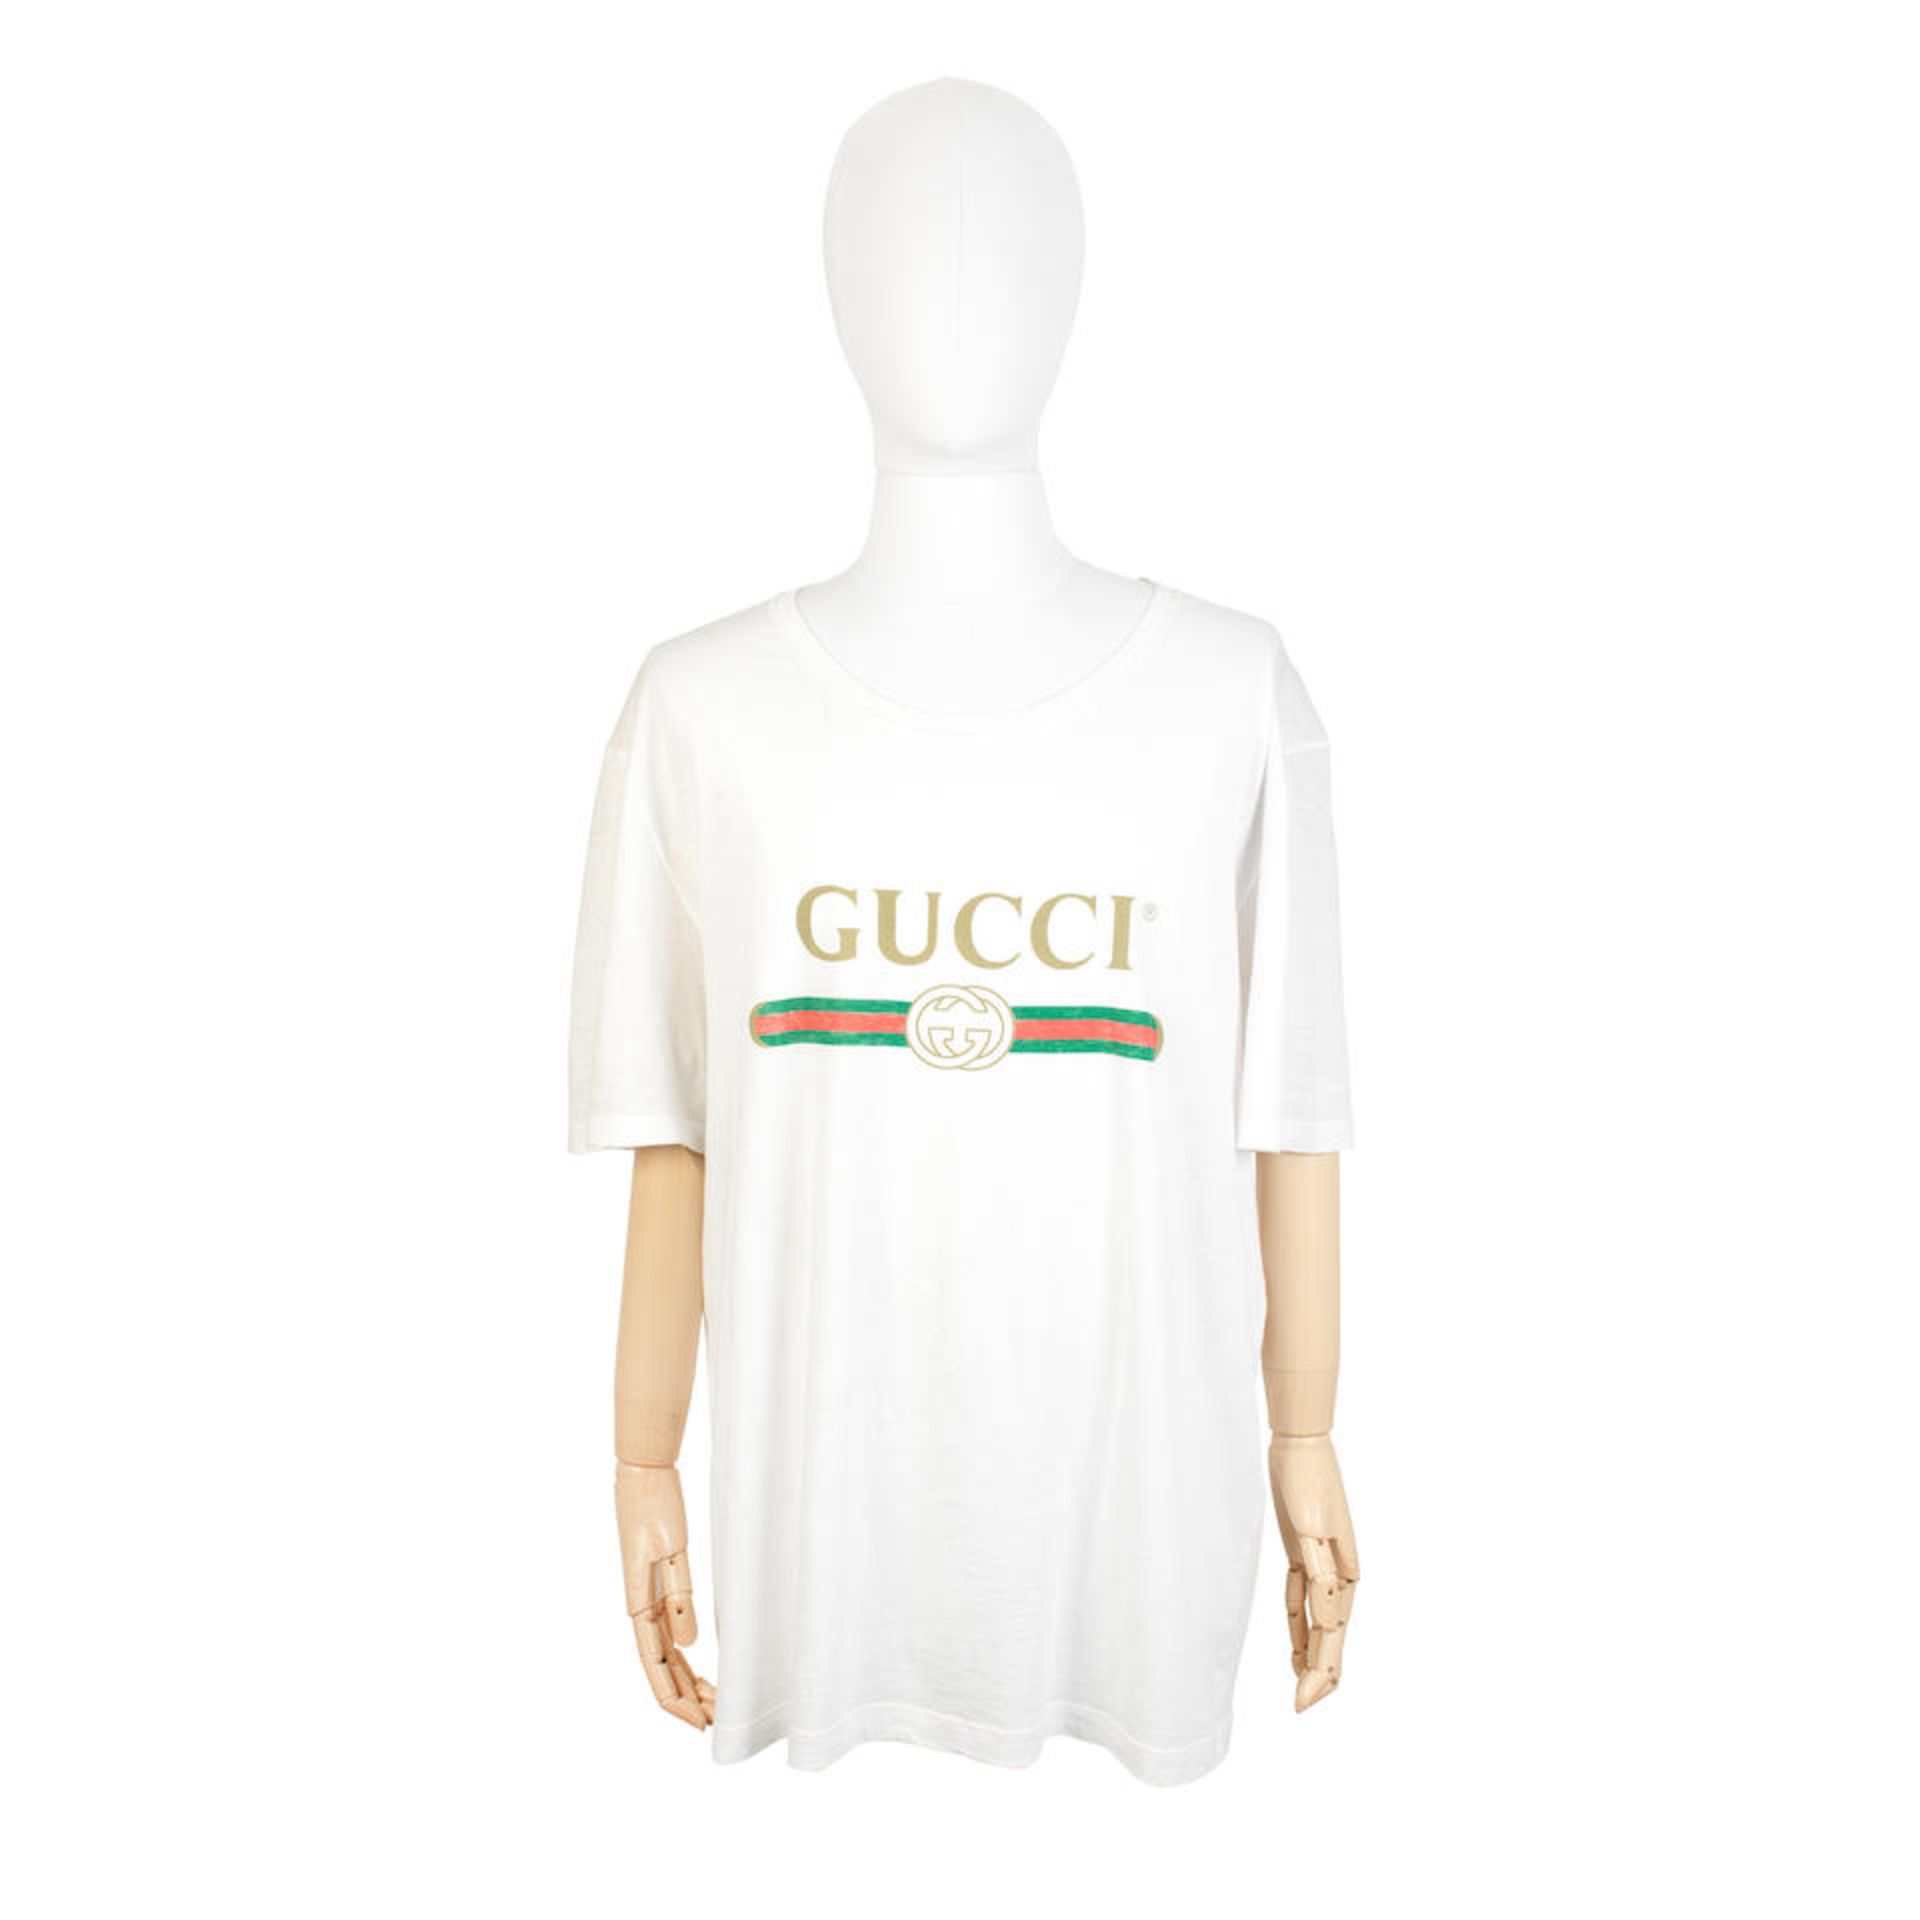 Gucci: a Men's Oversized White Cotton Logo Print T-shirt